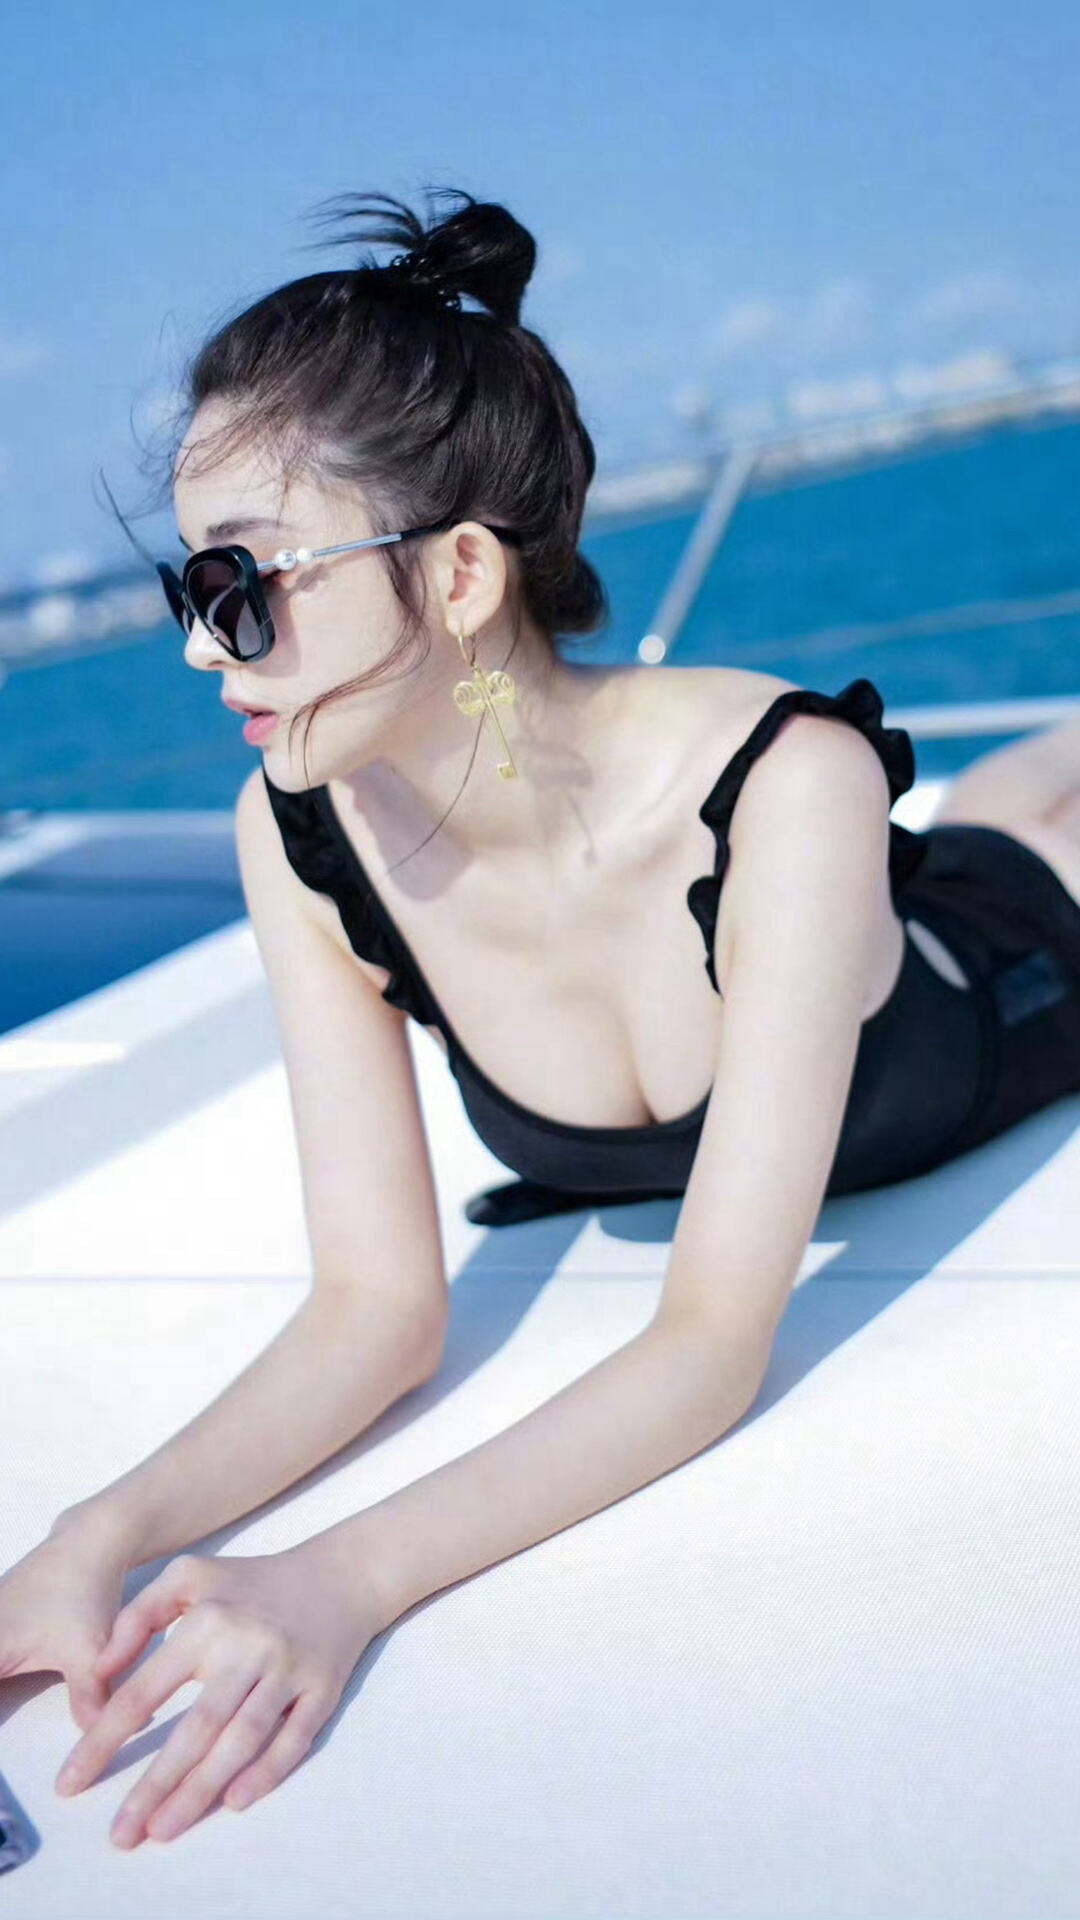 古力娜扎黑色吊带比基尼搭配墨镜显完美身材海上游艇手机壁纸图片第1张壁纸